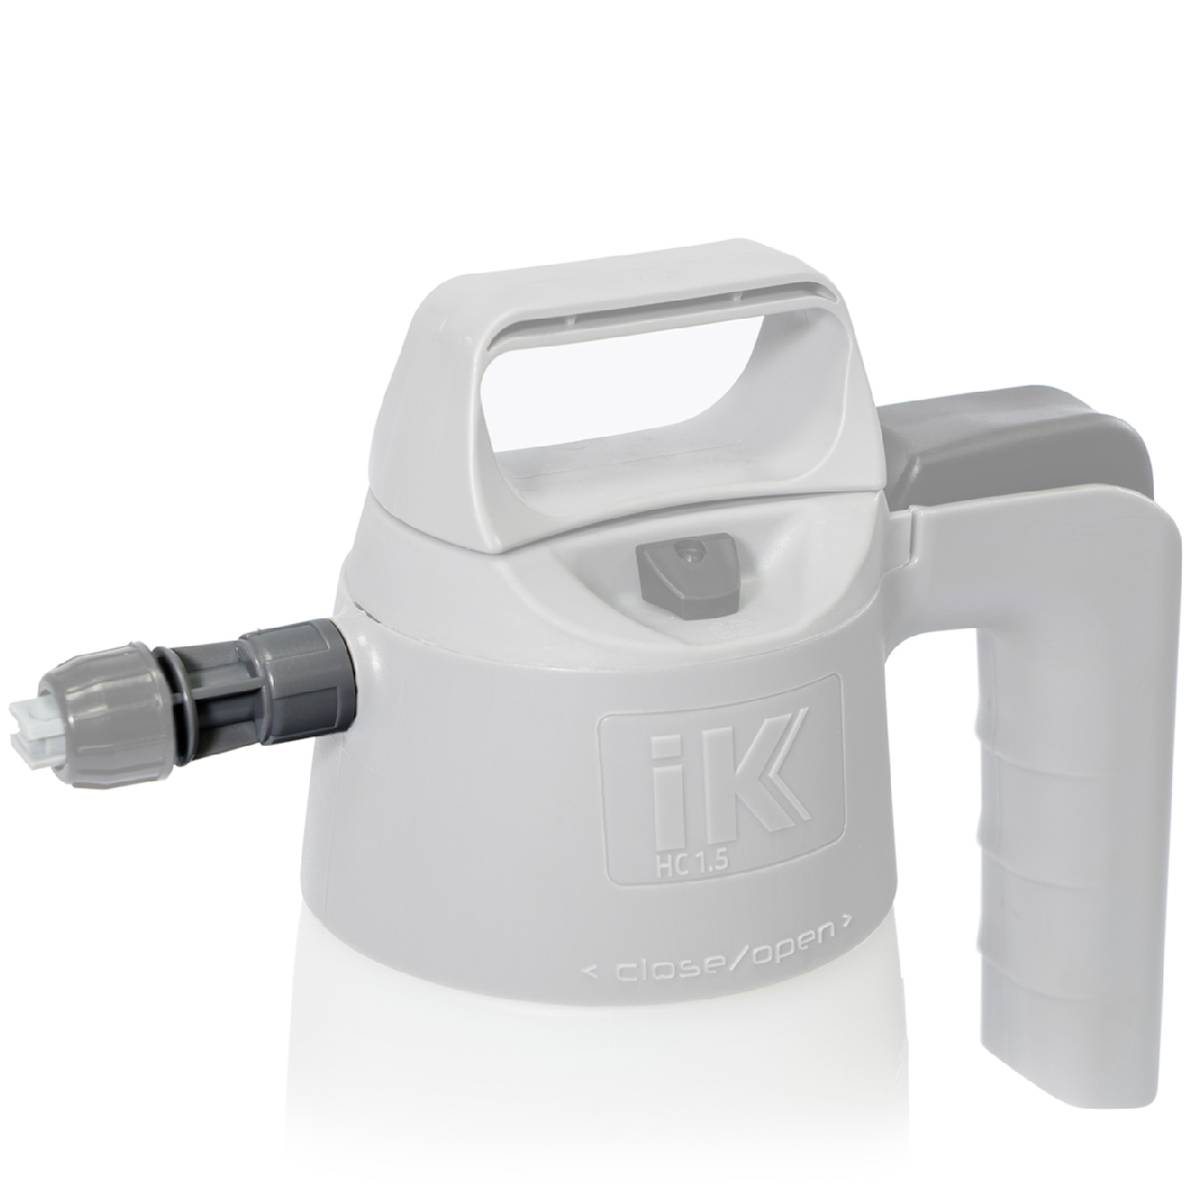 IK Sprayers M18 adapter for HC 1.5 - Garasjekos.no